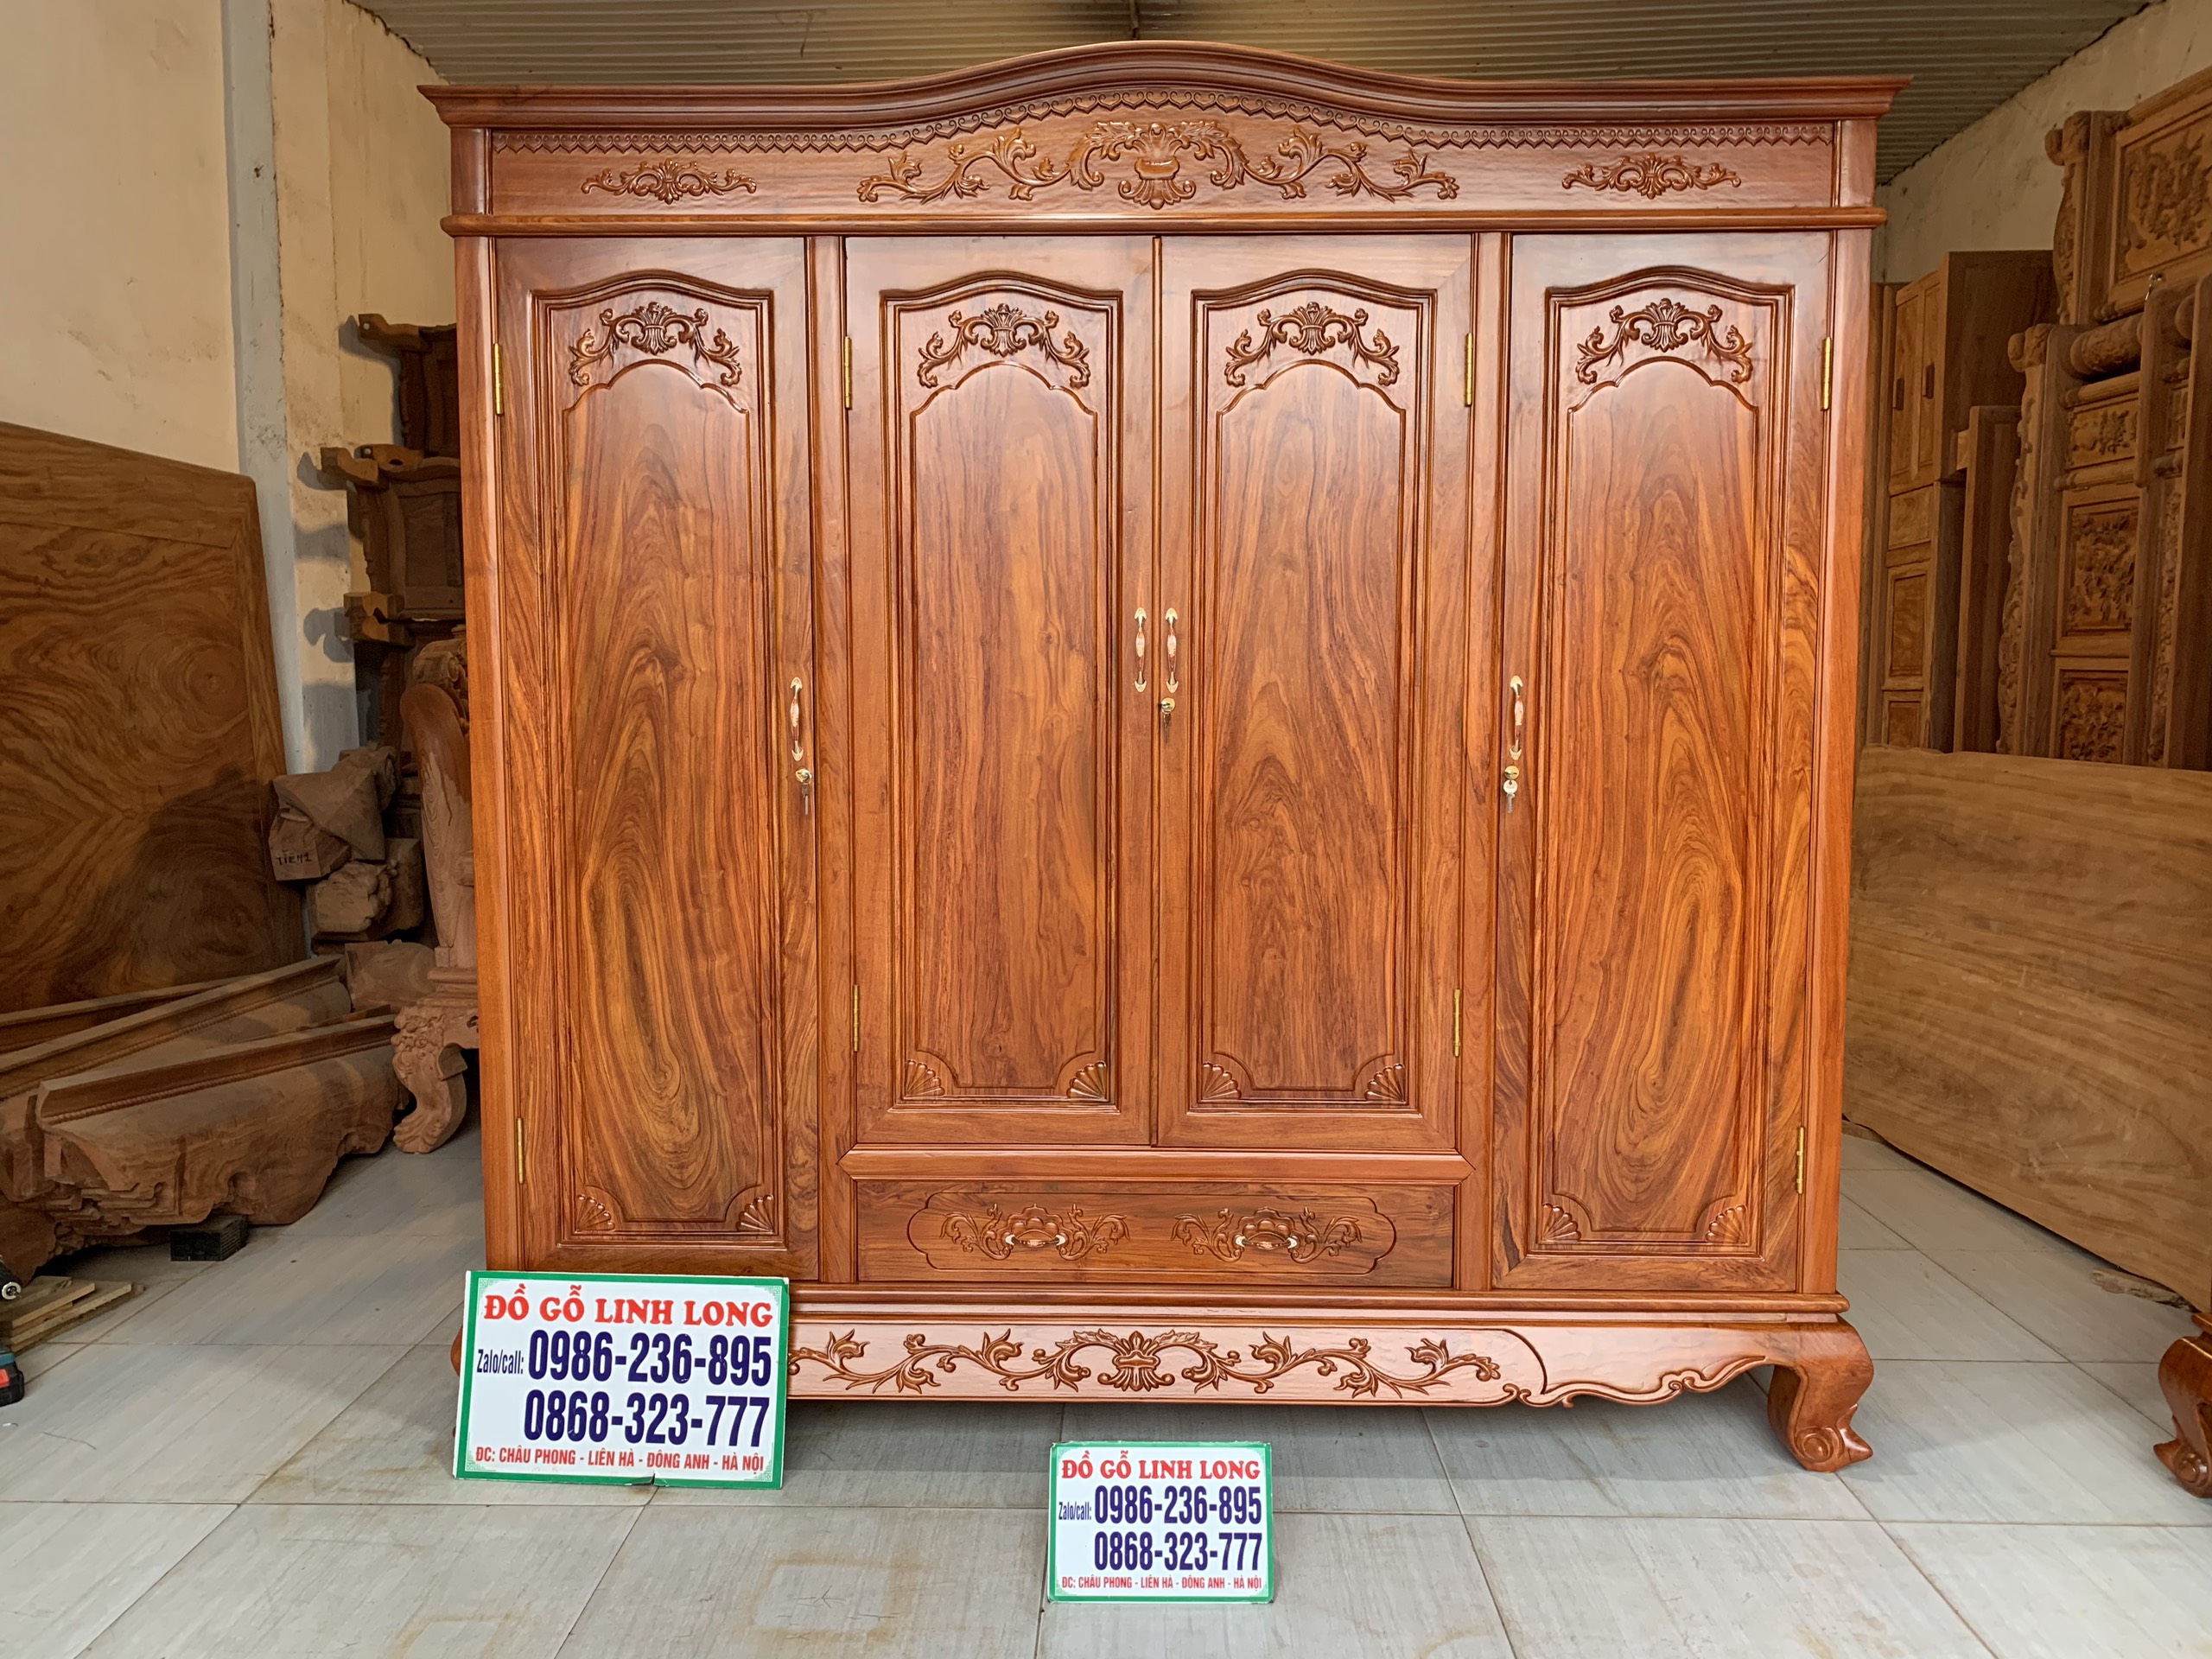 Chuyên bán tủ quần áo gỗ công nghiệp tại Đà Nẵng đẹp và rẻ.